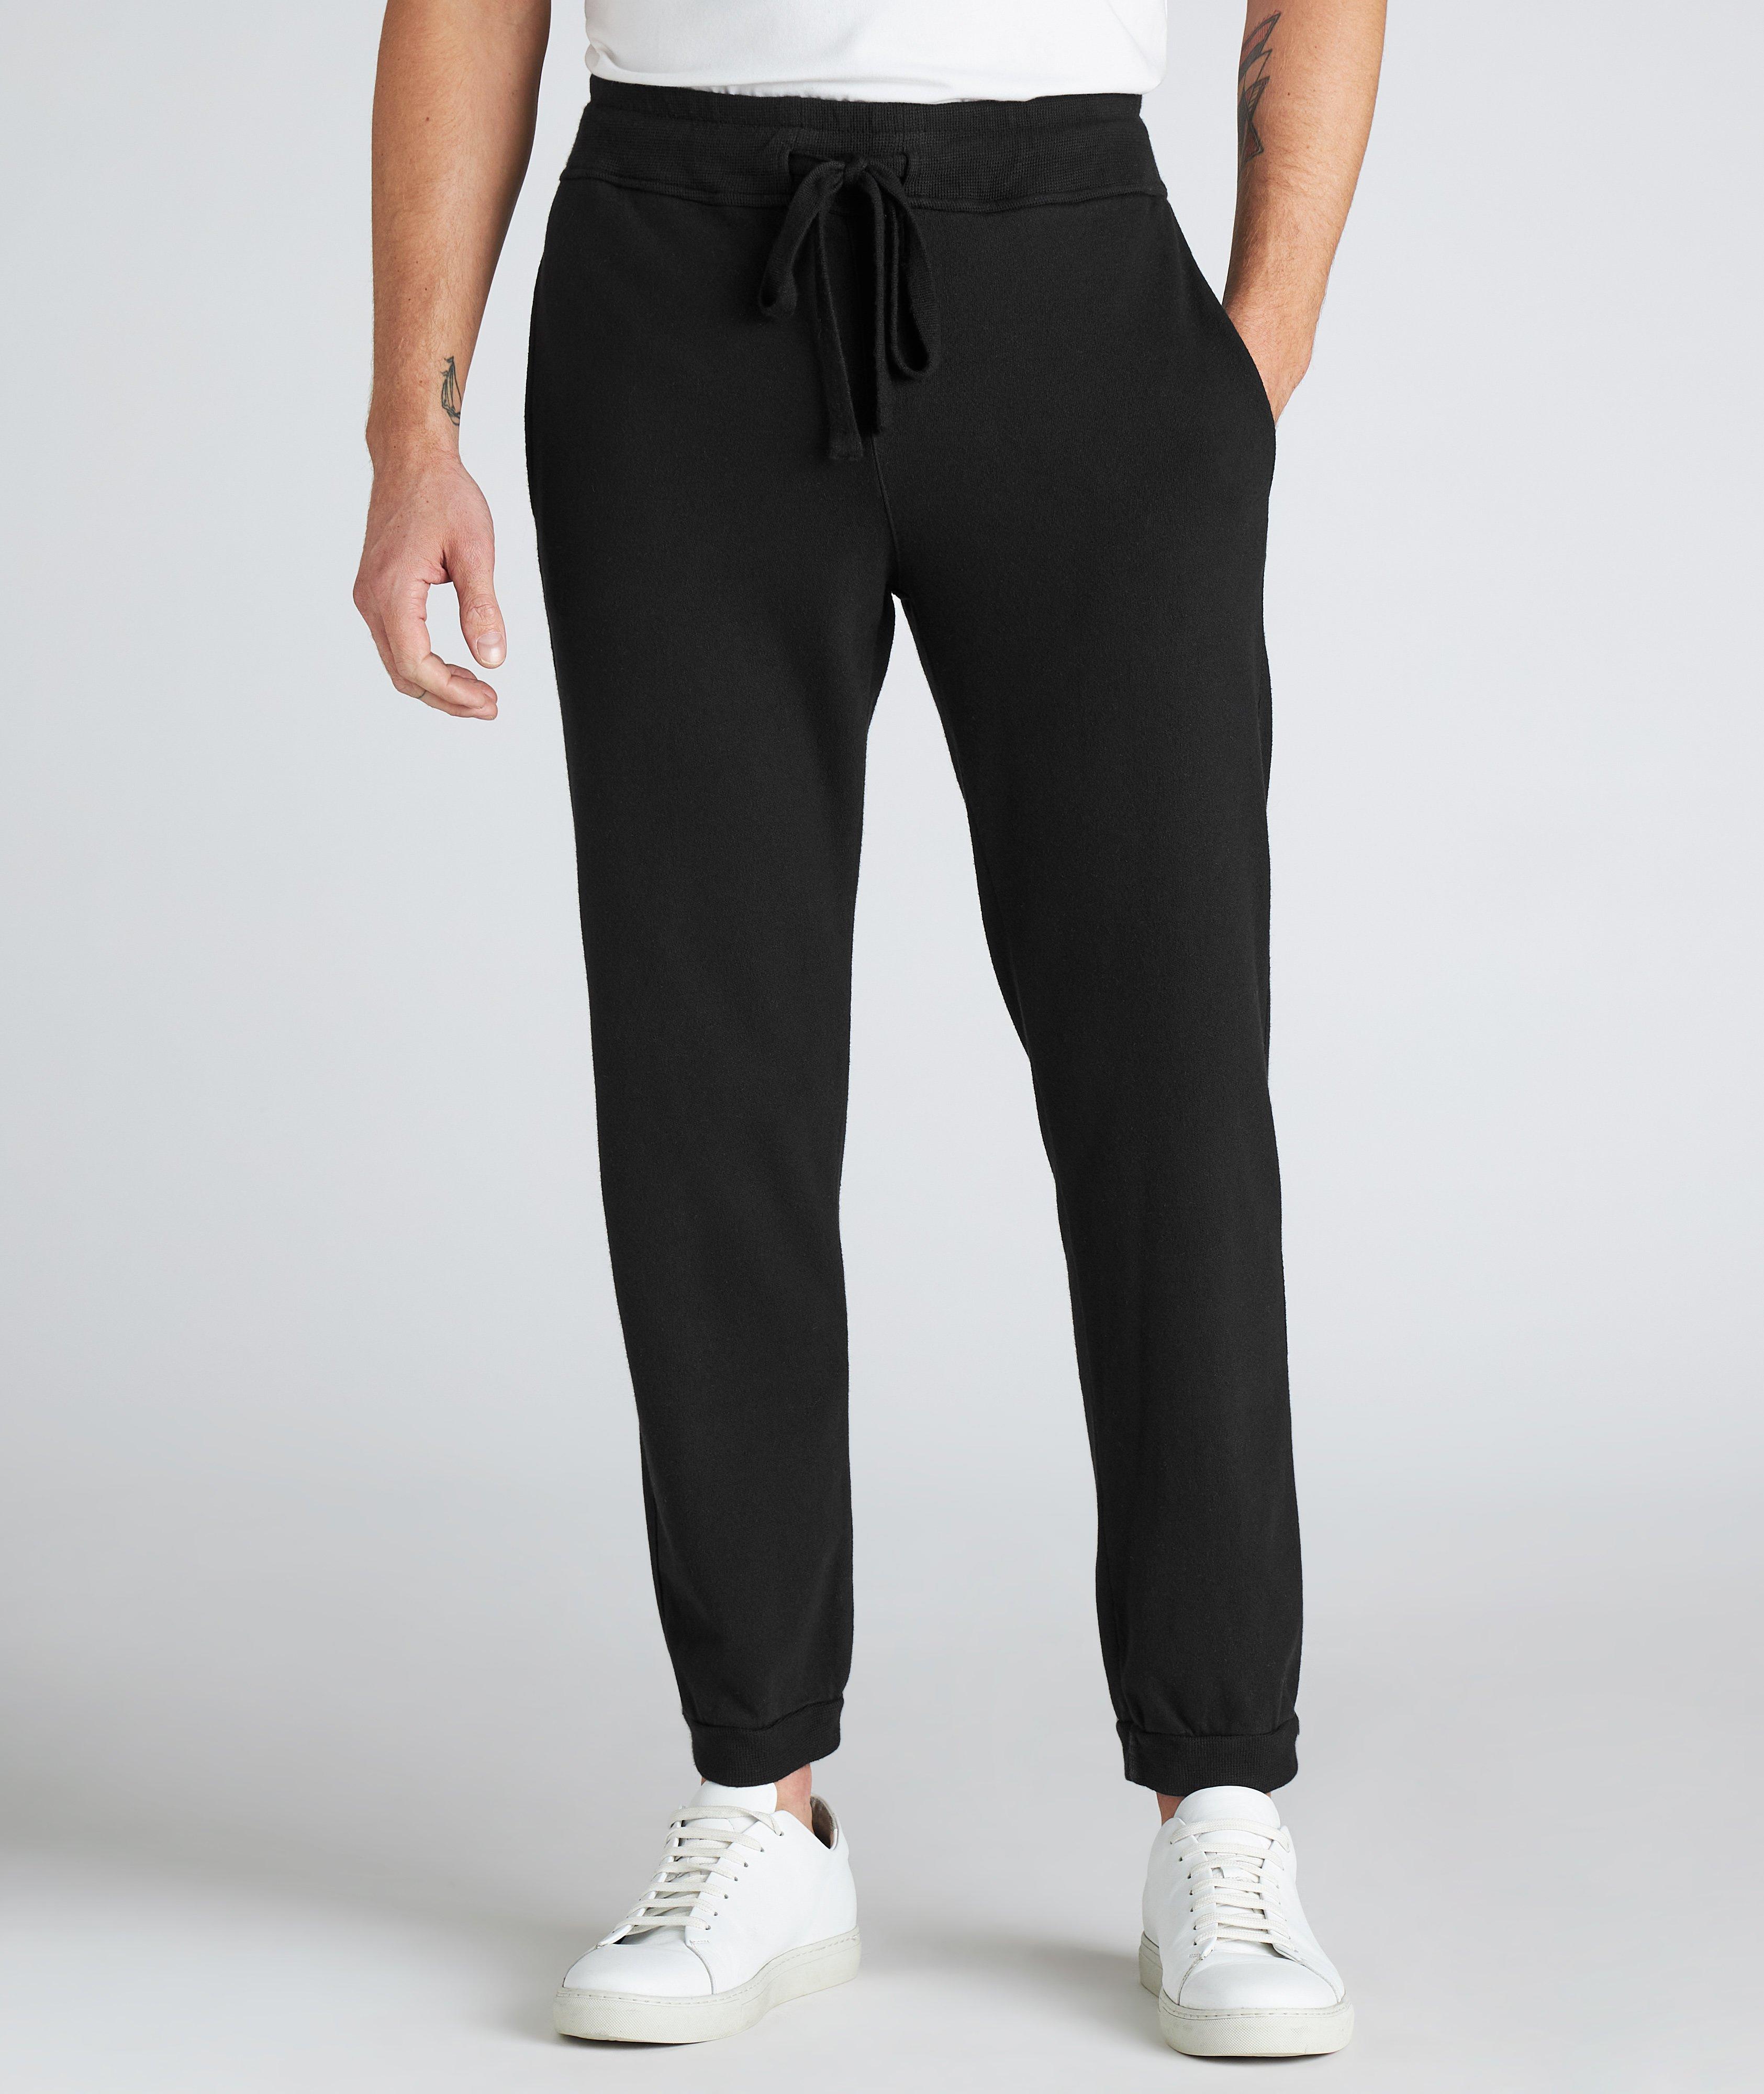 CROSSLEY Cotton-Cashmere Track Pants | Pants | Final Cut